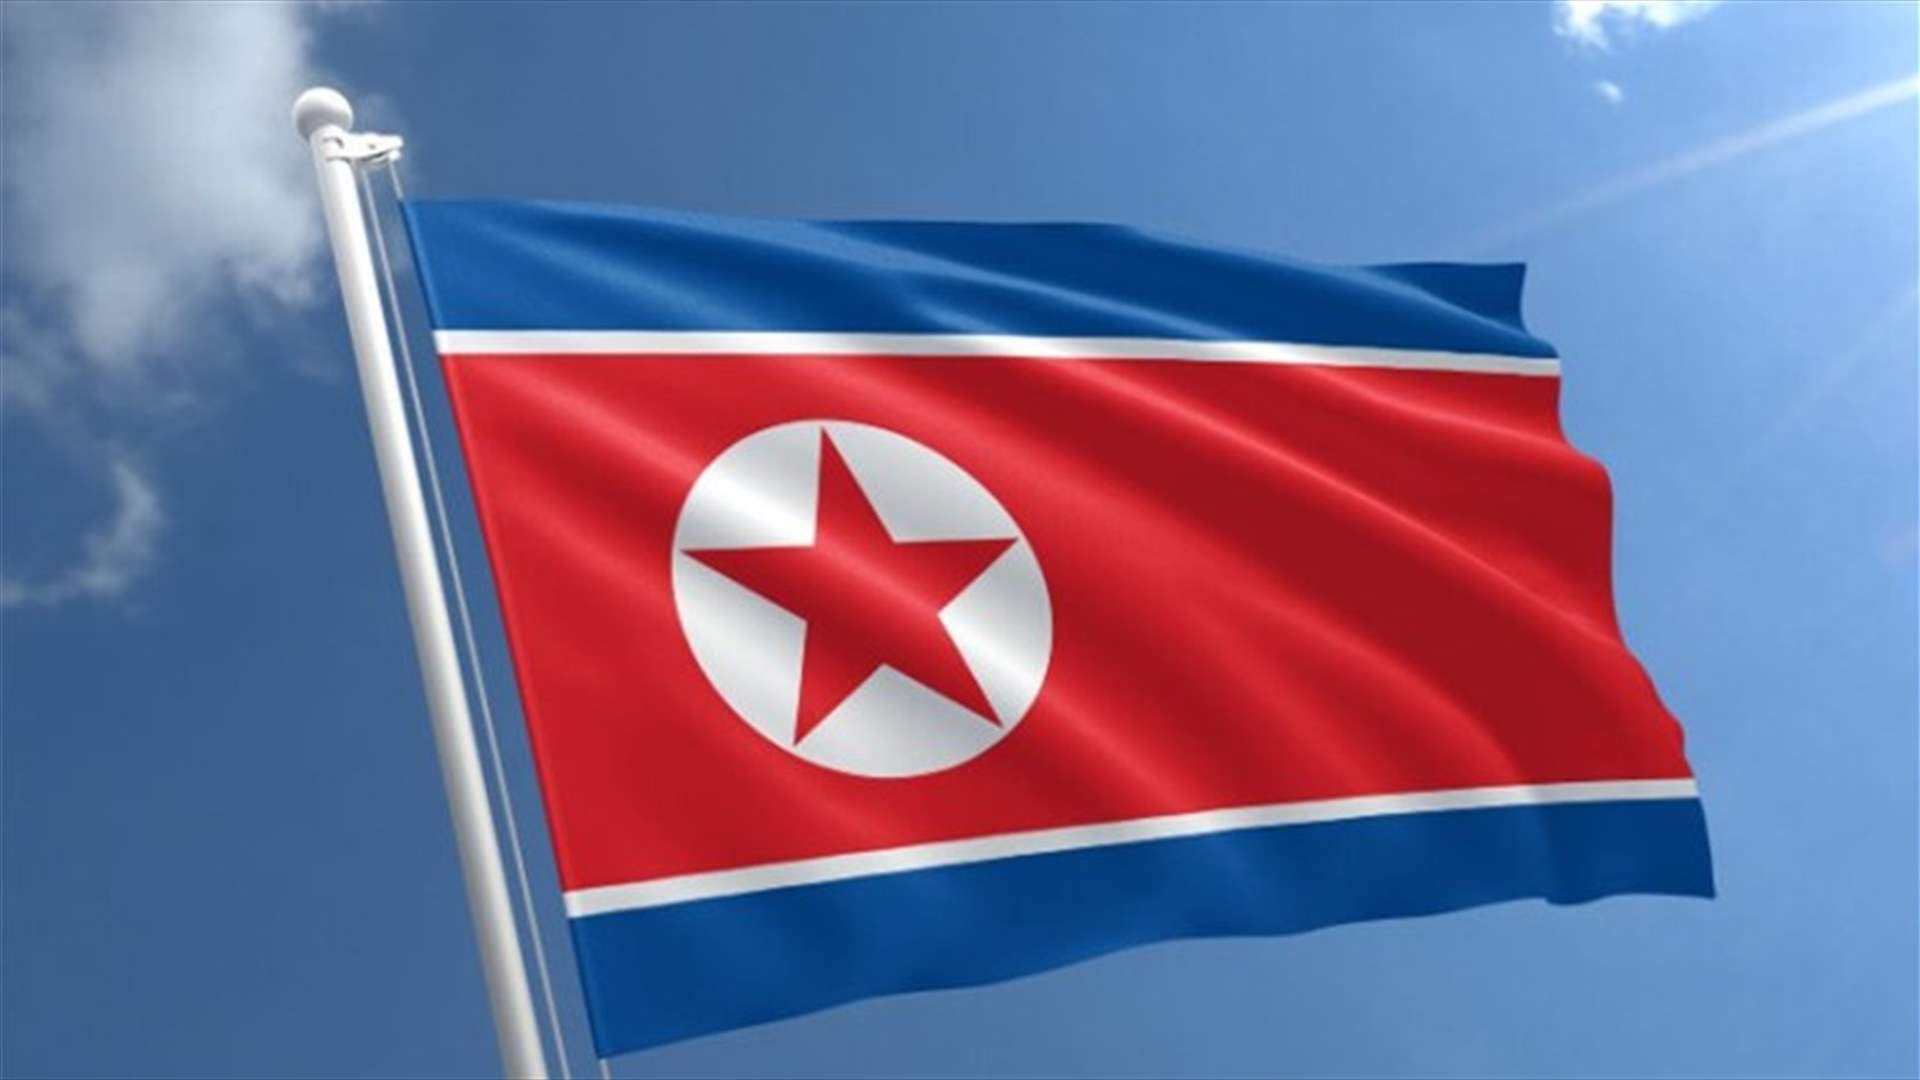 الحزب الحاكم في كوريا الشمالية يعقد أول مؤتمر عام له منذ خمس سنوات